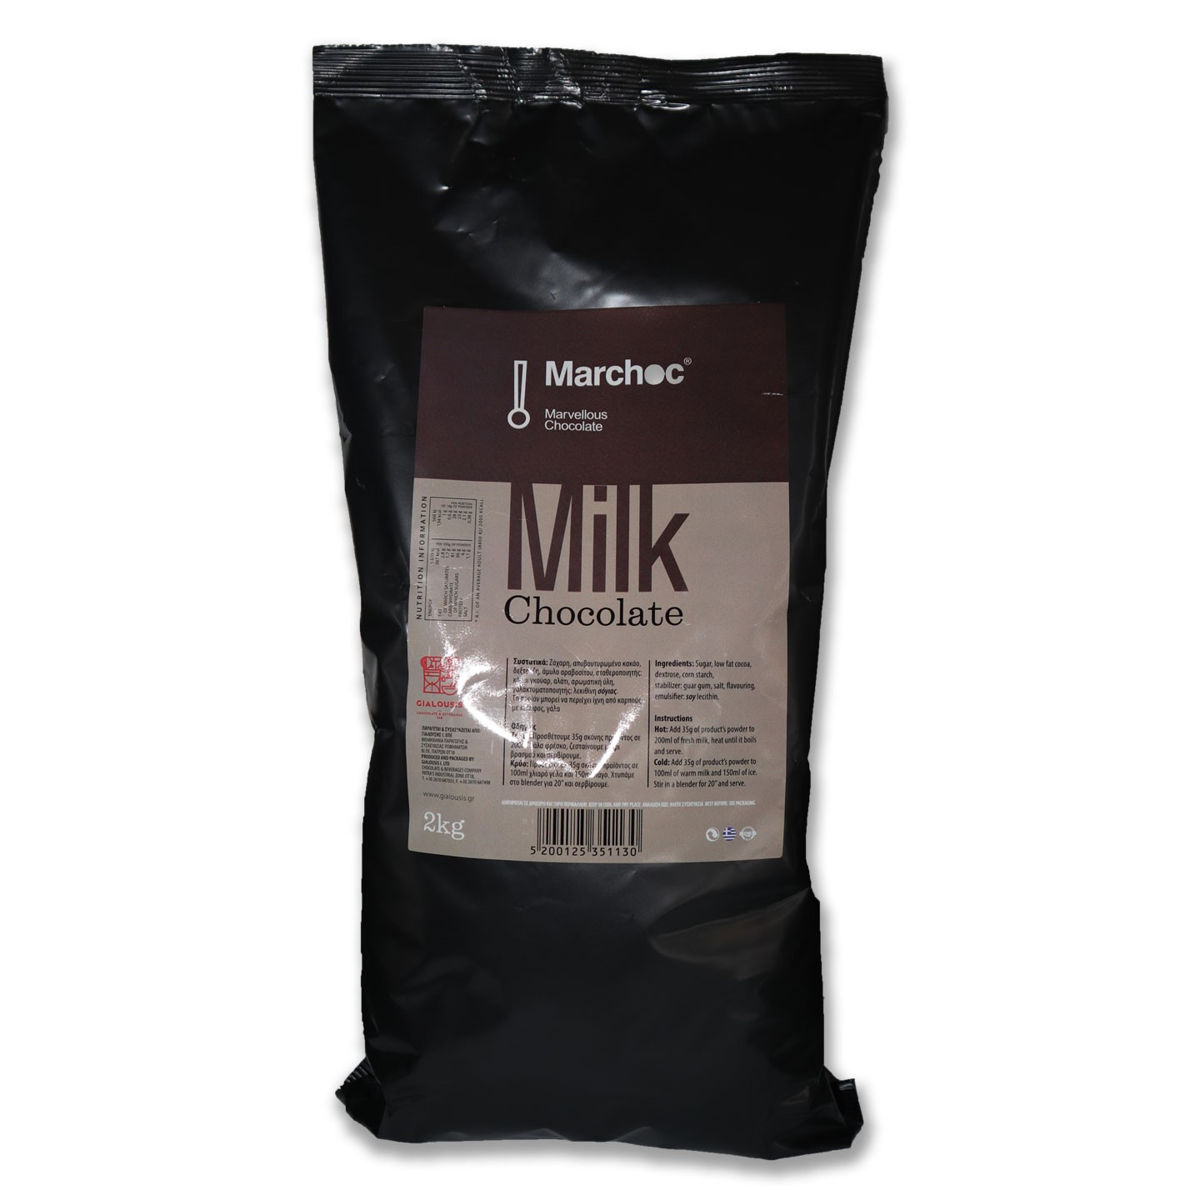 Marchoc Milk Chocolate